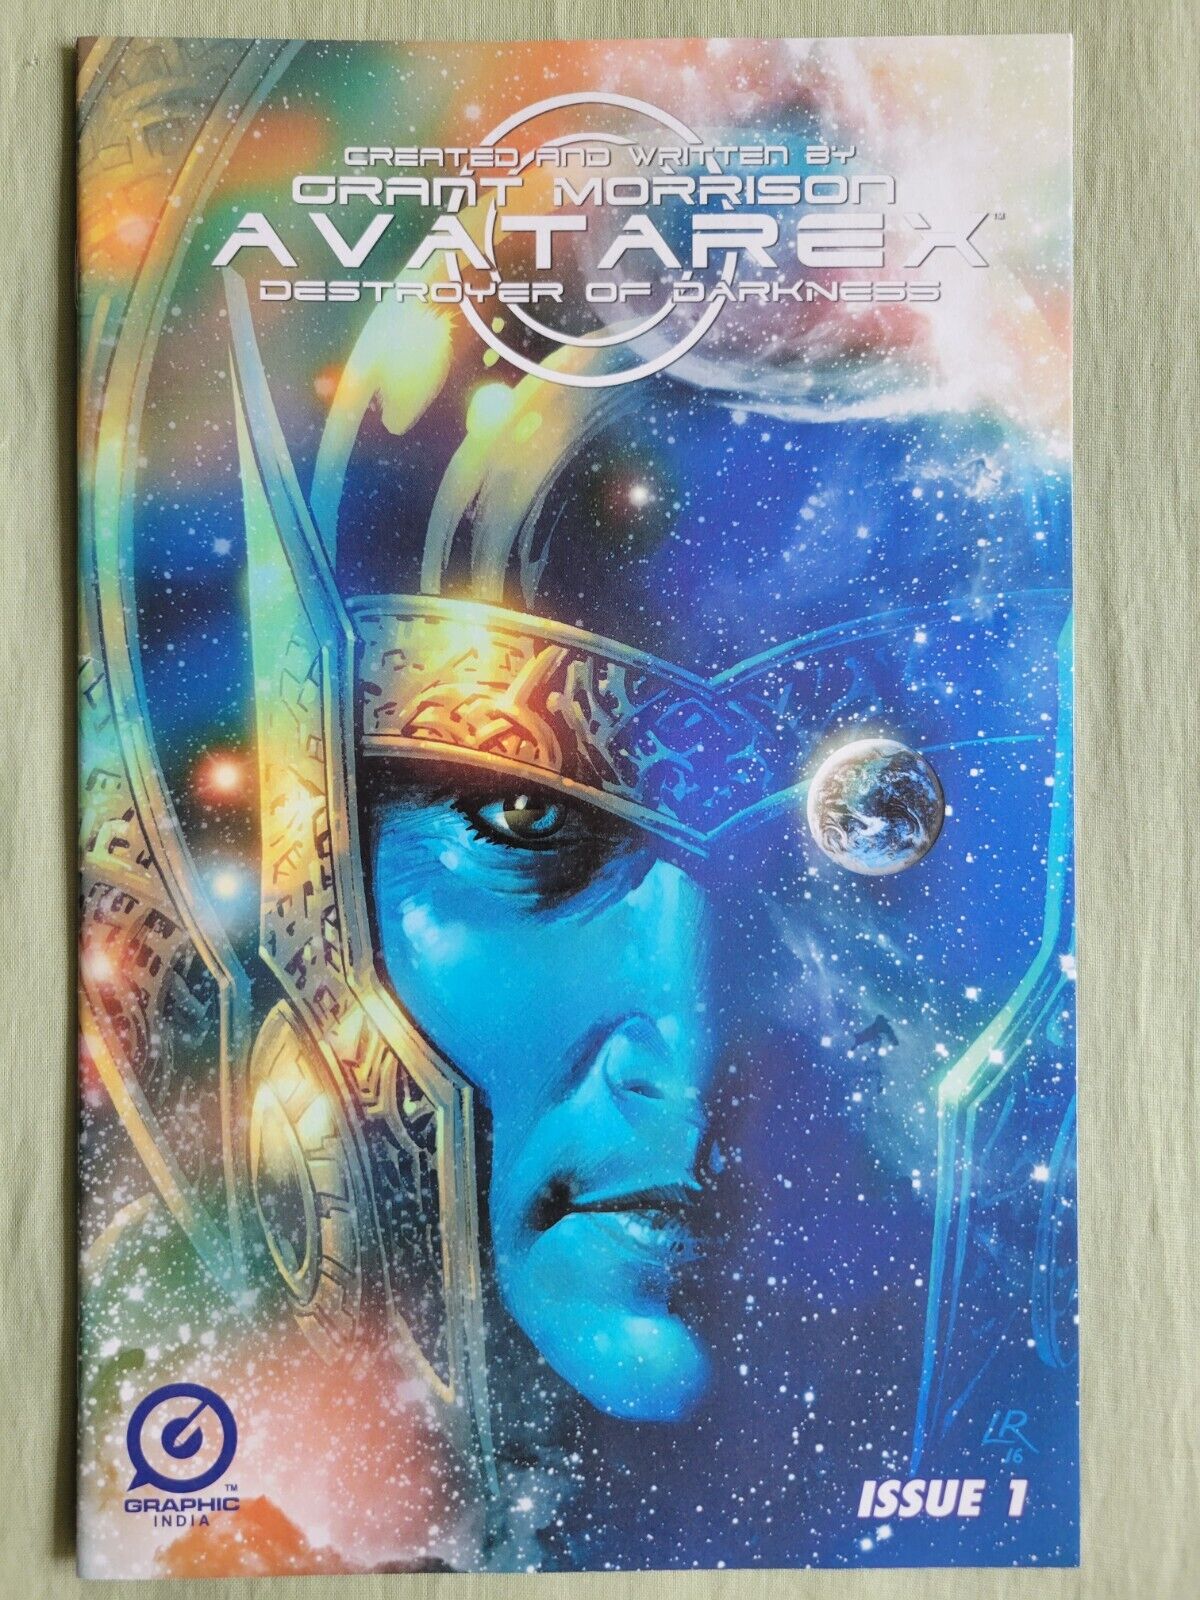 Avatarex: Destroyer of Darkness #1 (Luke Ross VARIANT Cover)